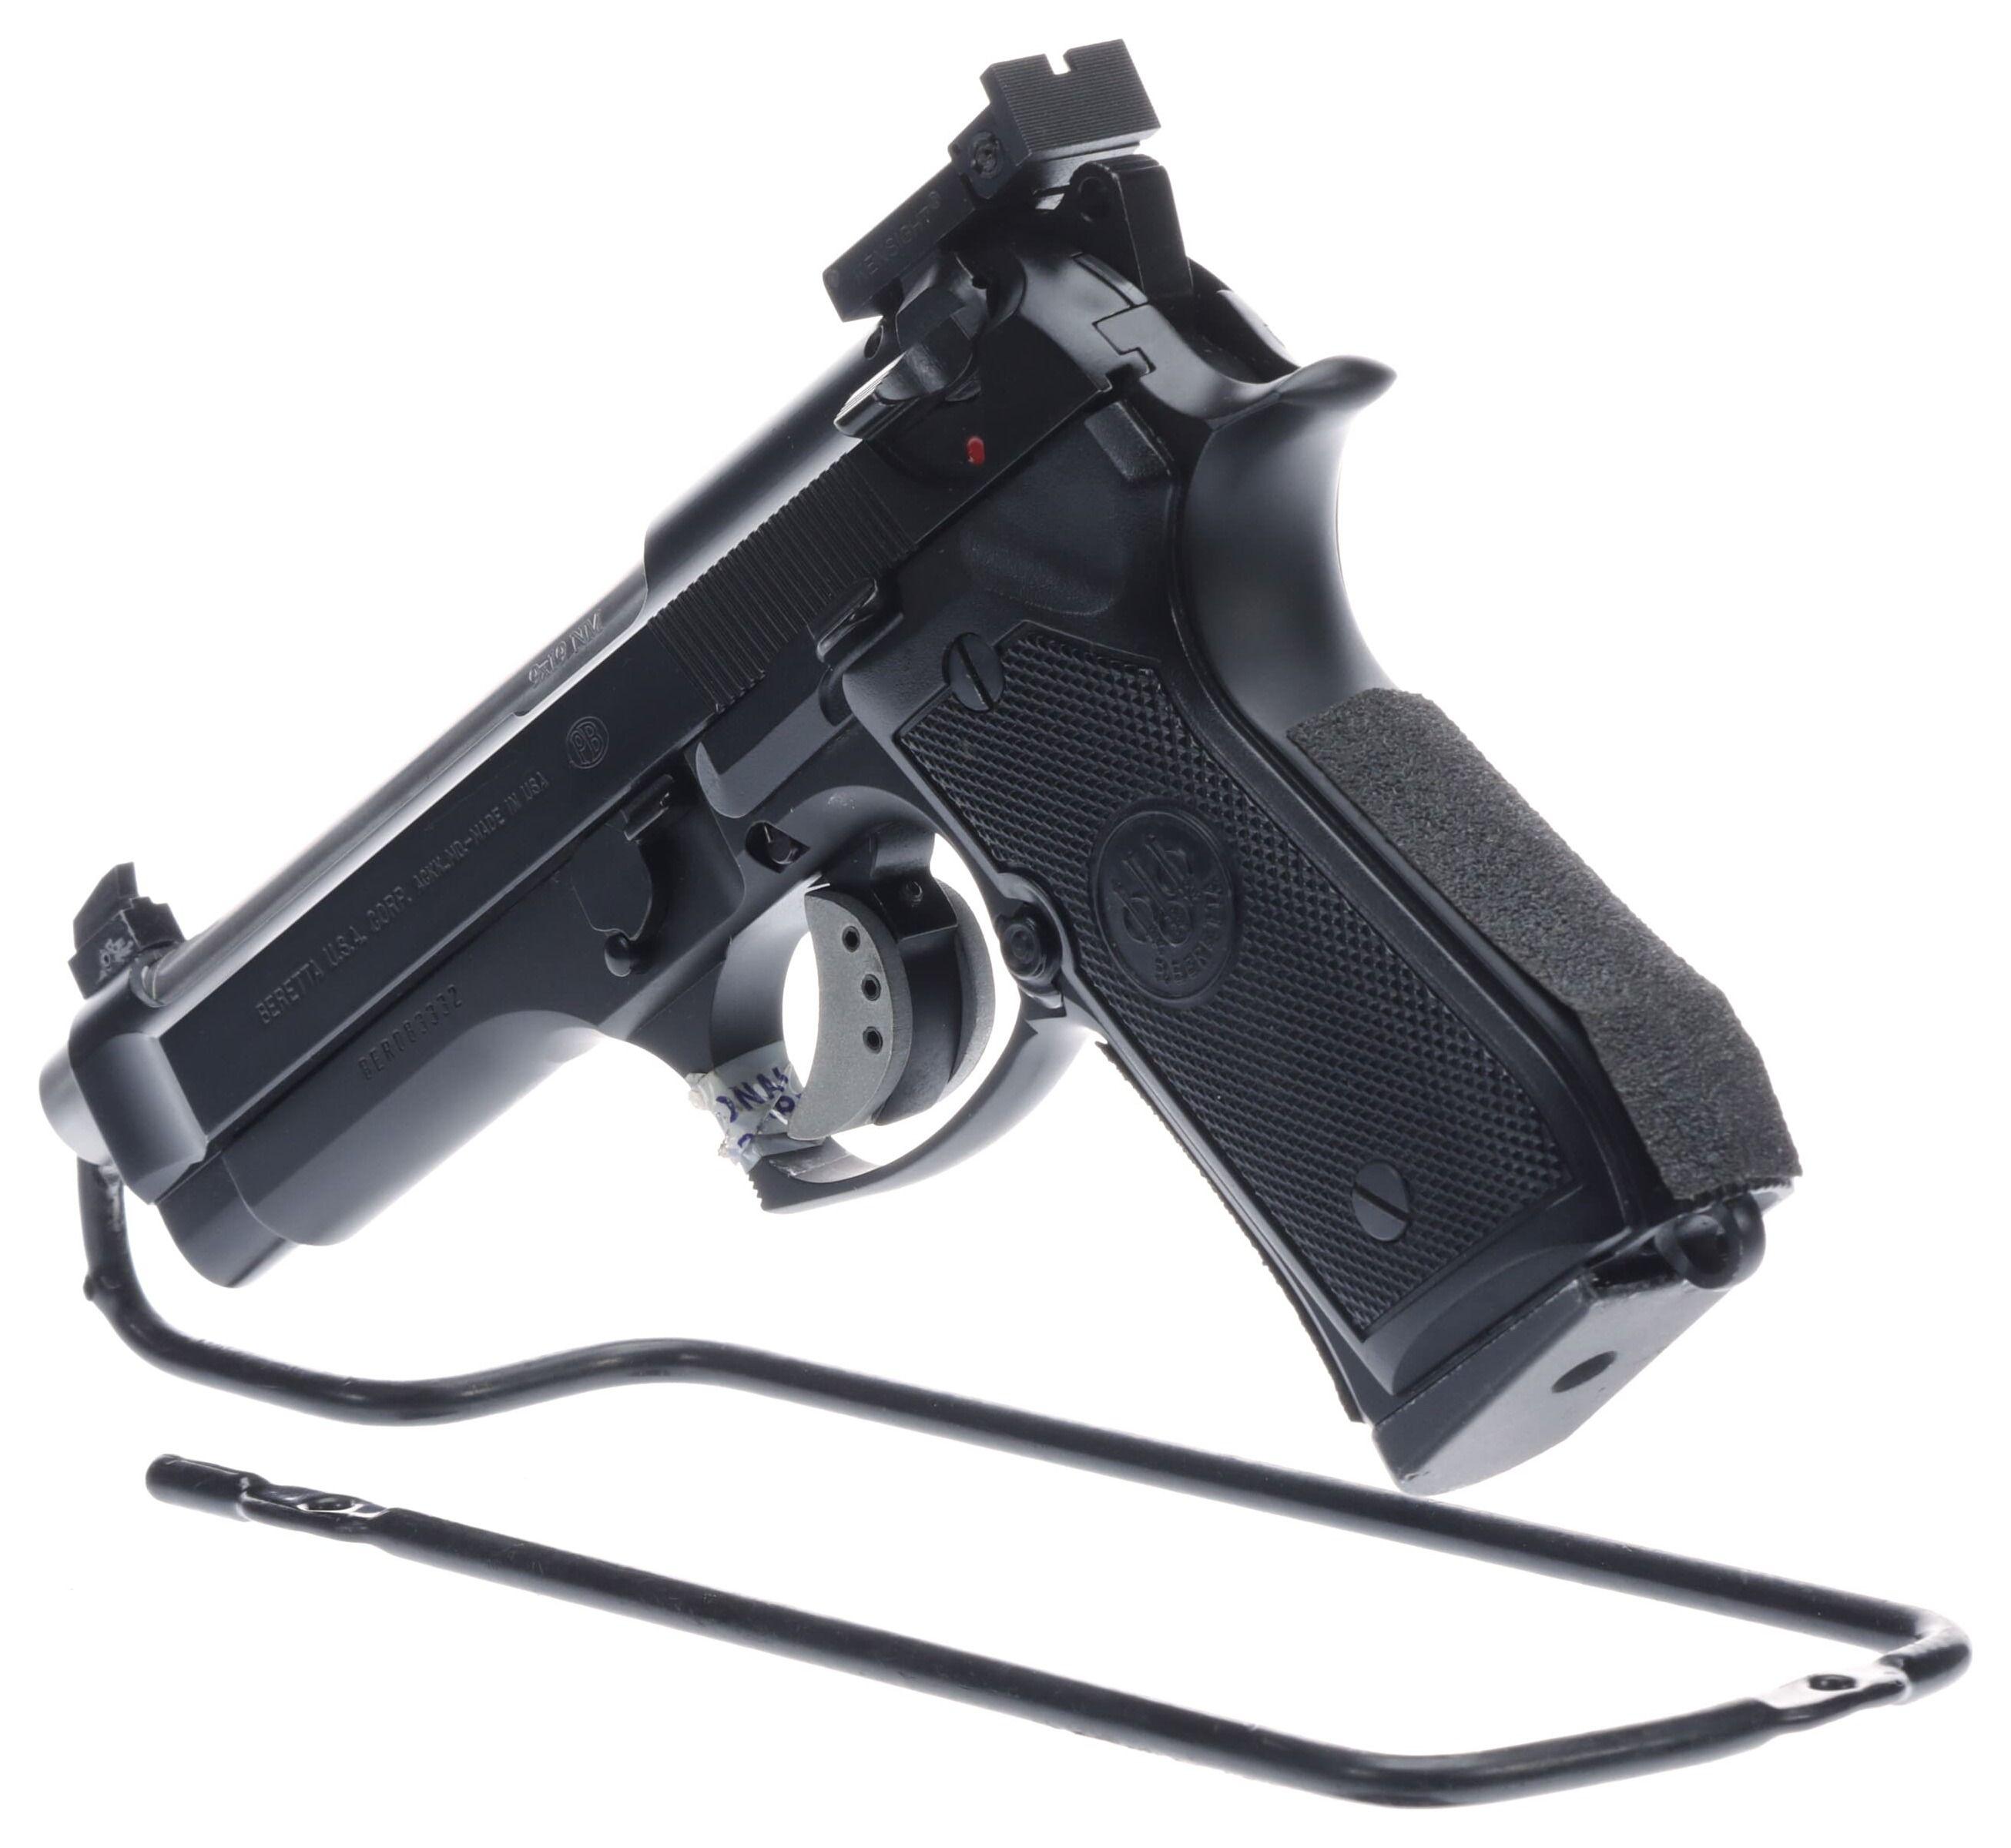 Beretta Model 92fs Semi-Automatic Pistol with Case